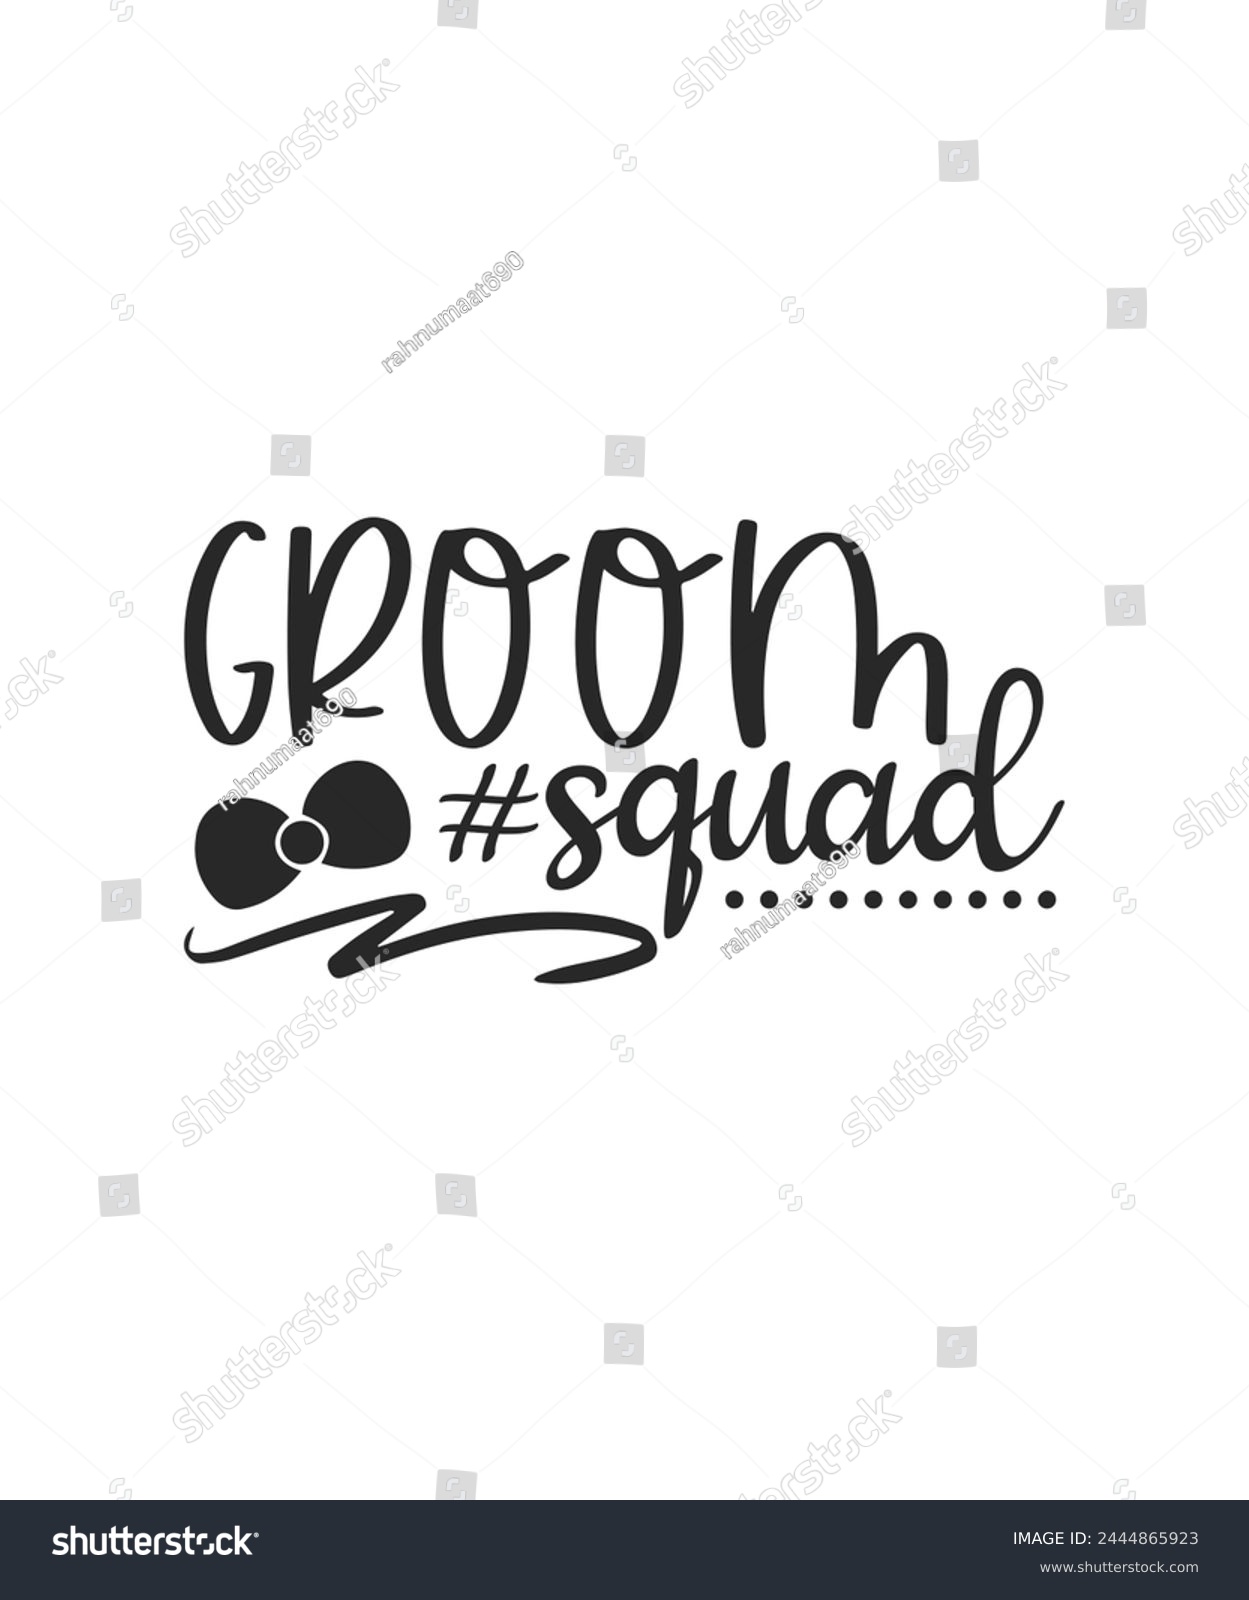 SVG of Groom squad wedding bride groom svg